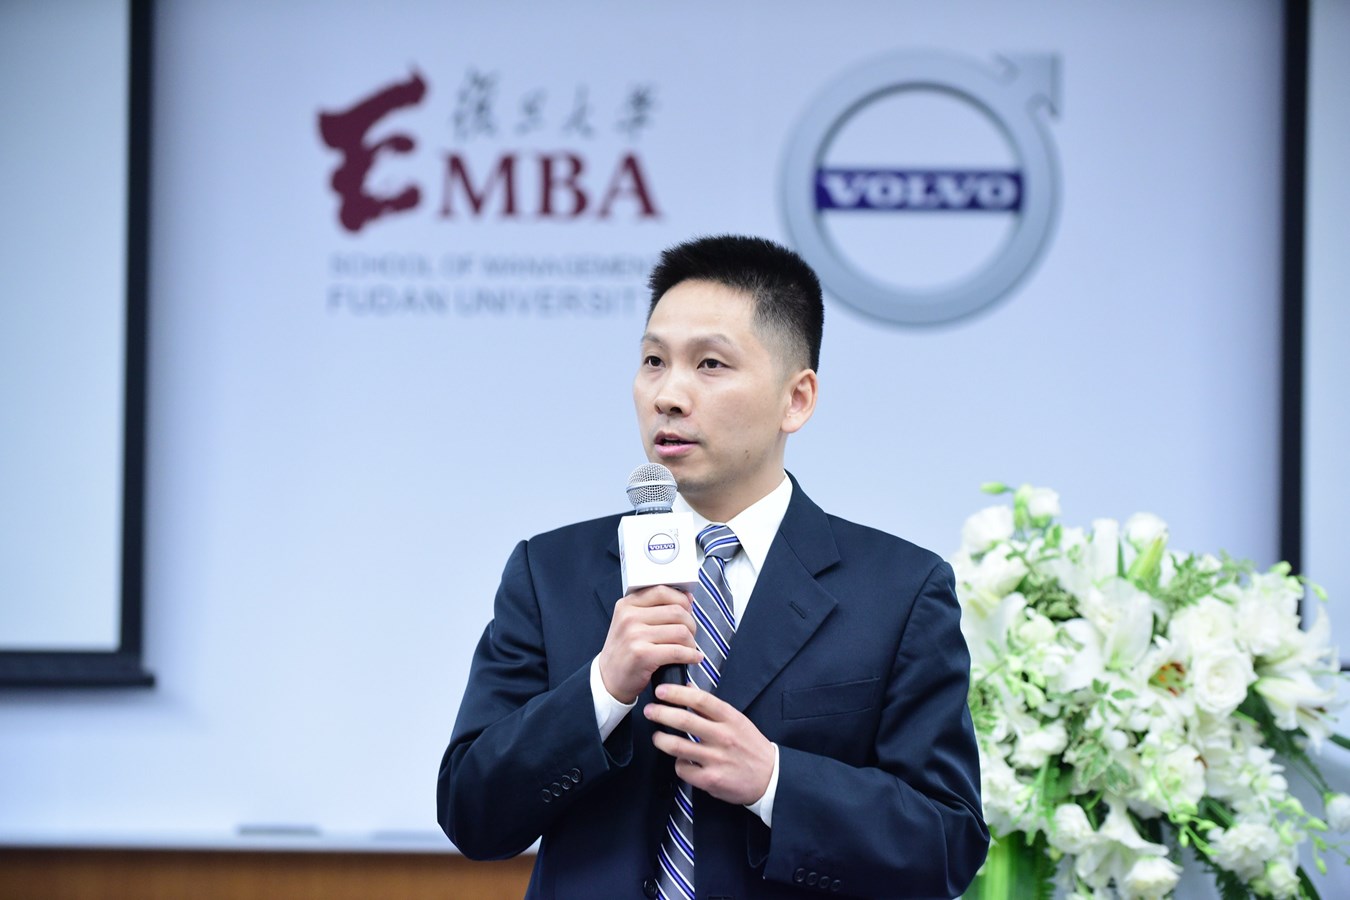 复旦大学管理学院管理科学系冯天俊教授讲述企业创新三部曲